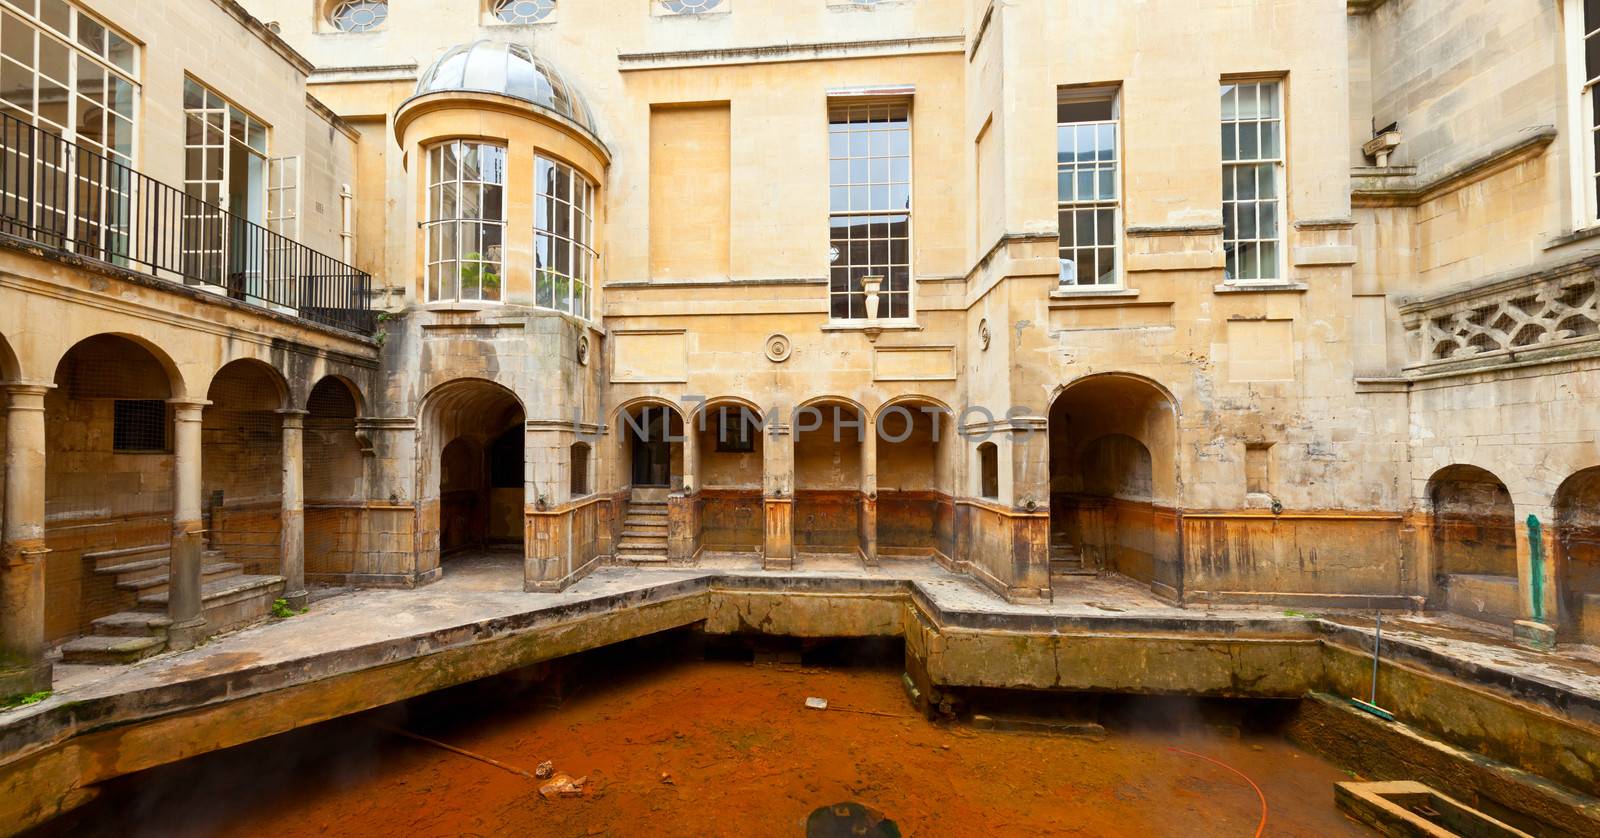 Roman Baths in Bath by naumoid